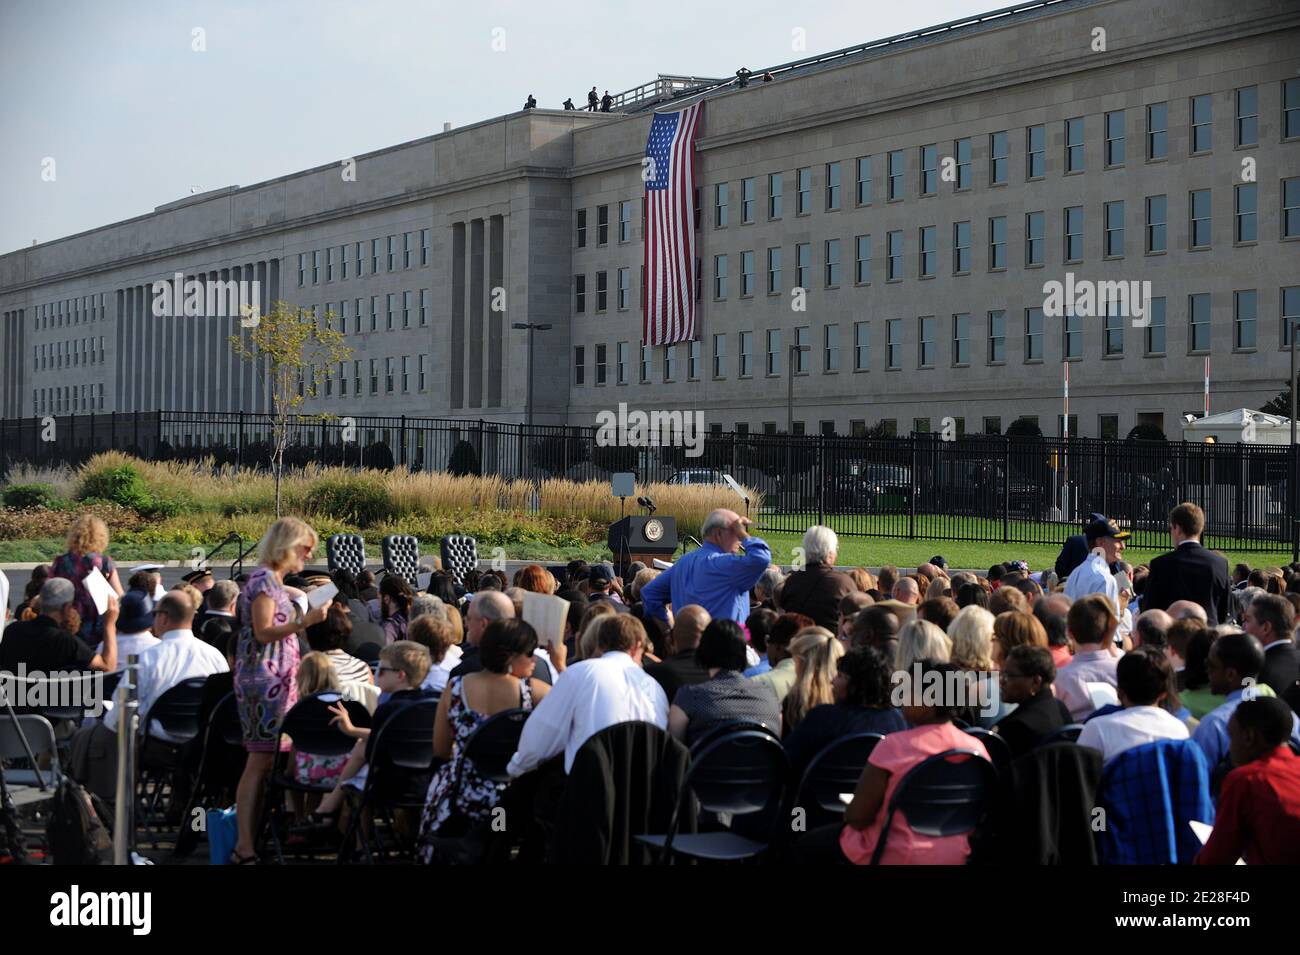 Il Pentagono commemora il decimo anniversario di 9/11 2001 attentati terroristici del 11 settembre 2011 ad Arlington, VA, USA. Foto di Olivier Douliery/ABACAPRESS.COM Foto Stock